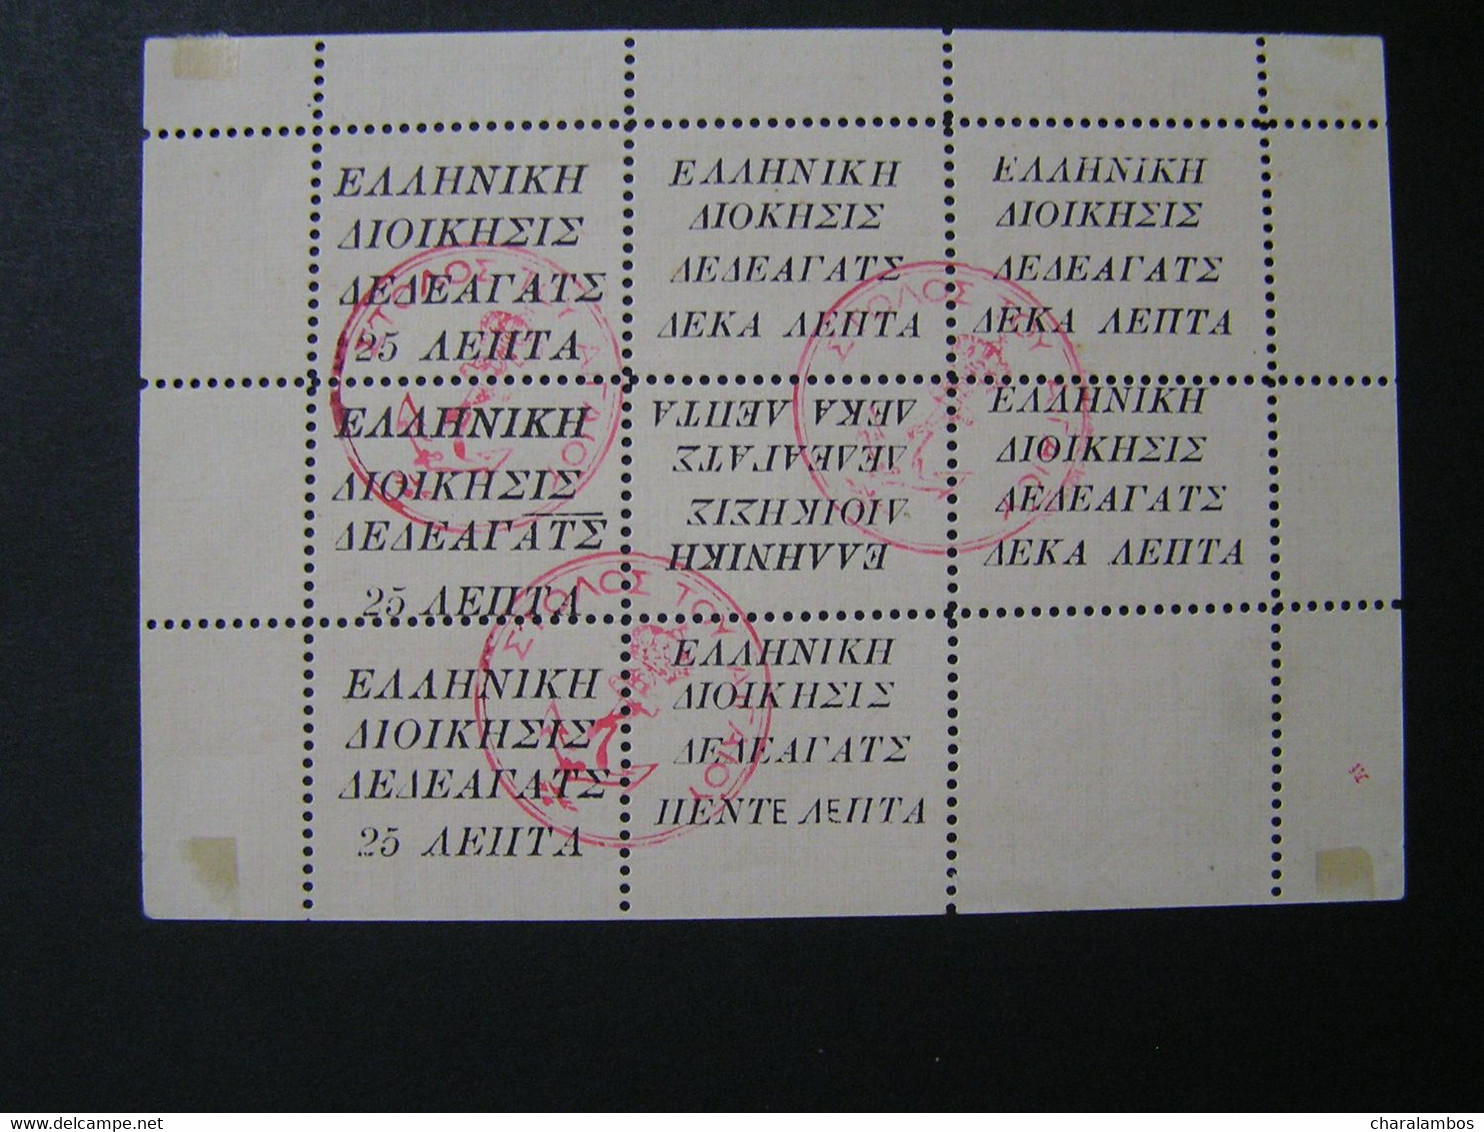 GREECE-Dedeagatch 1st Label Issue SHEETLET F6 San Gom Sheetlets Or Stamps Of Wat.. - Dedeagh